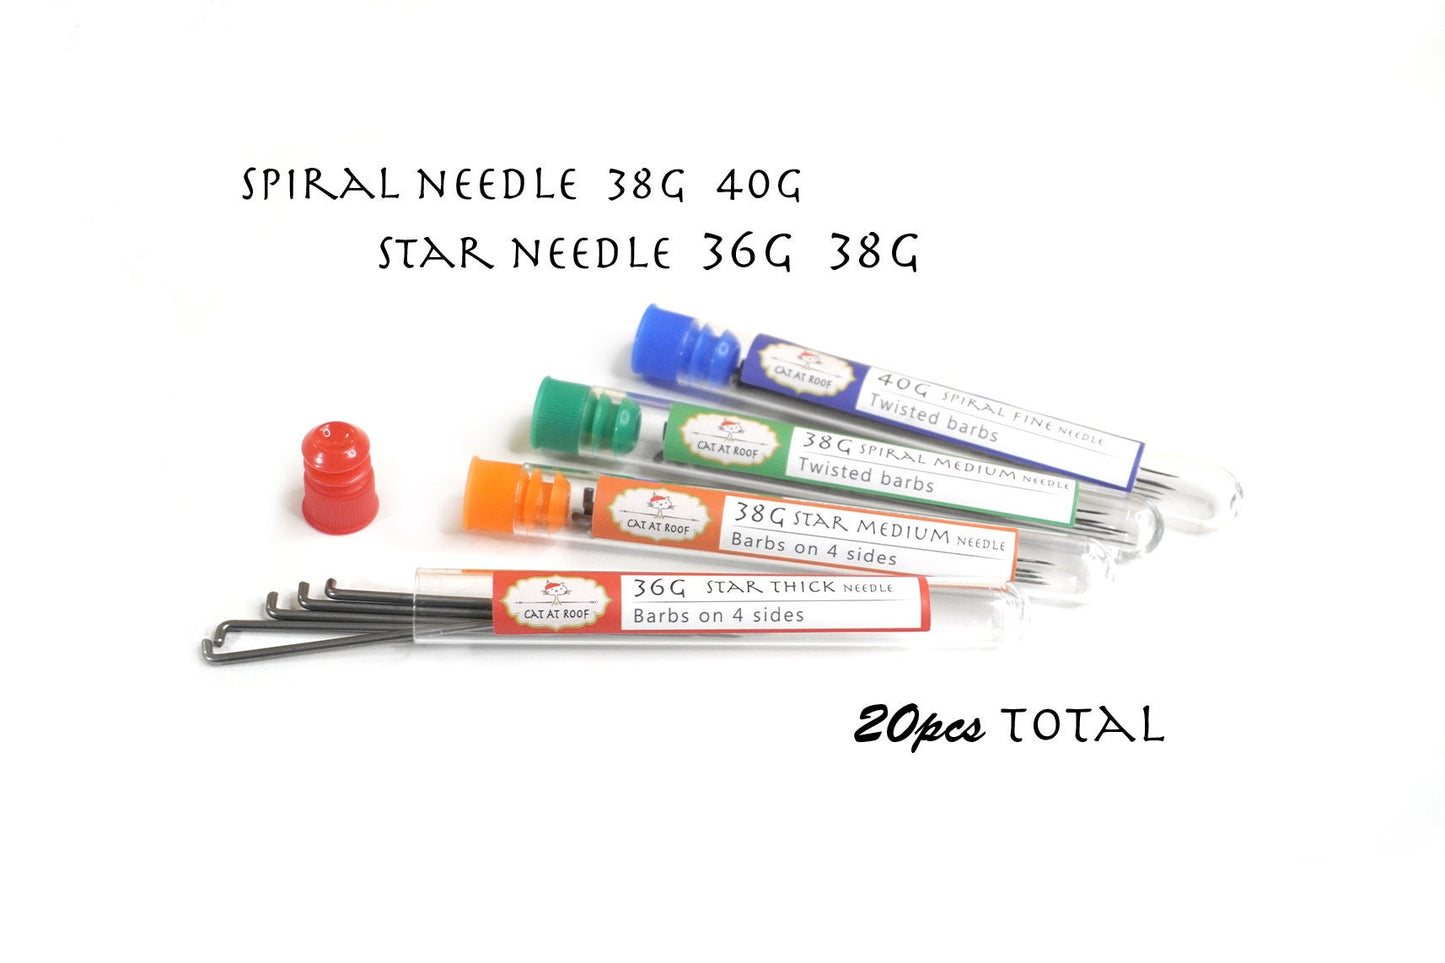 20pcs Star & Spiral Felting Needles Set - Star (36G, 38G), Spiral (38G, 40G) - 5pcs each size